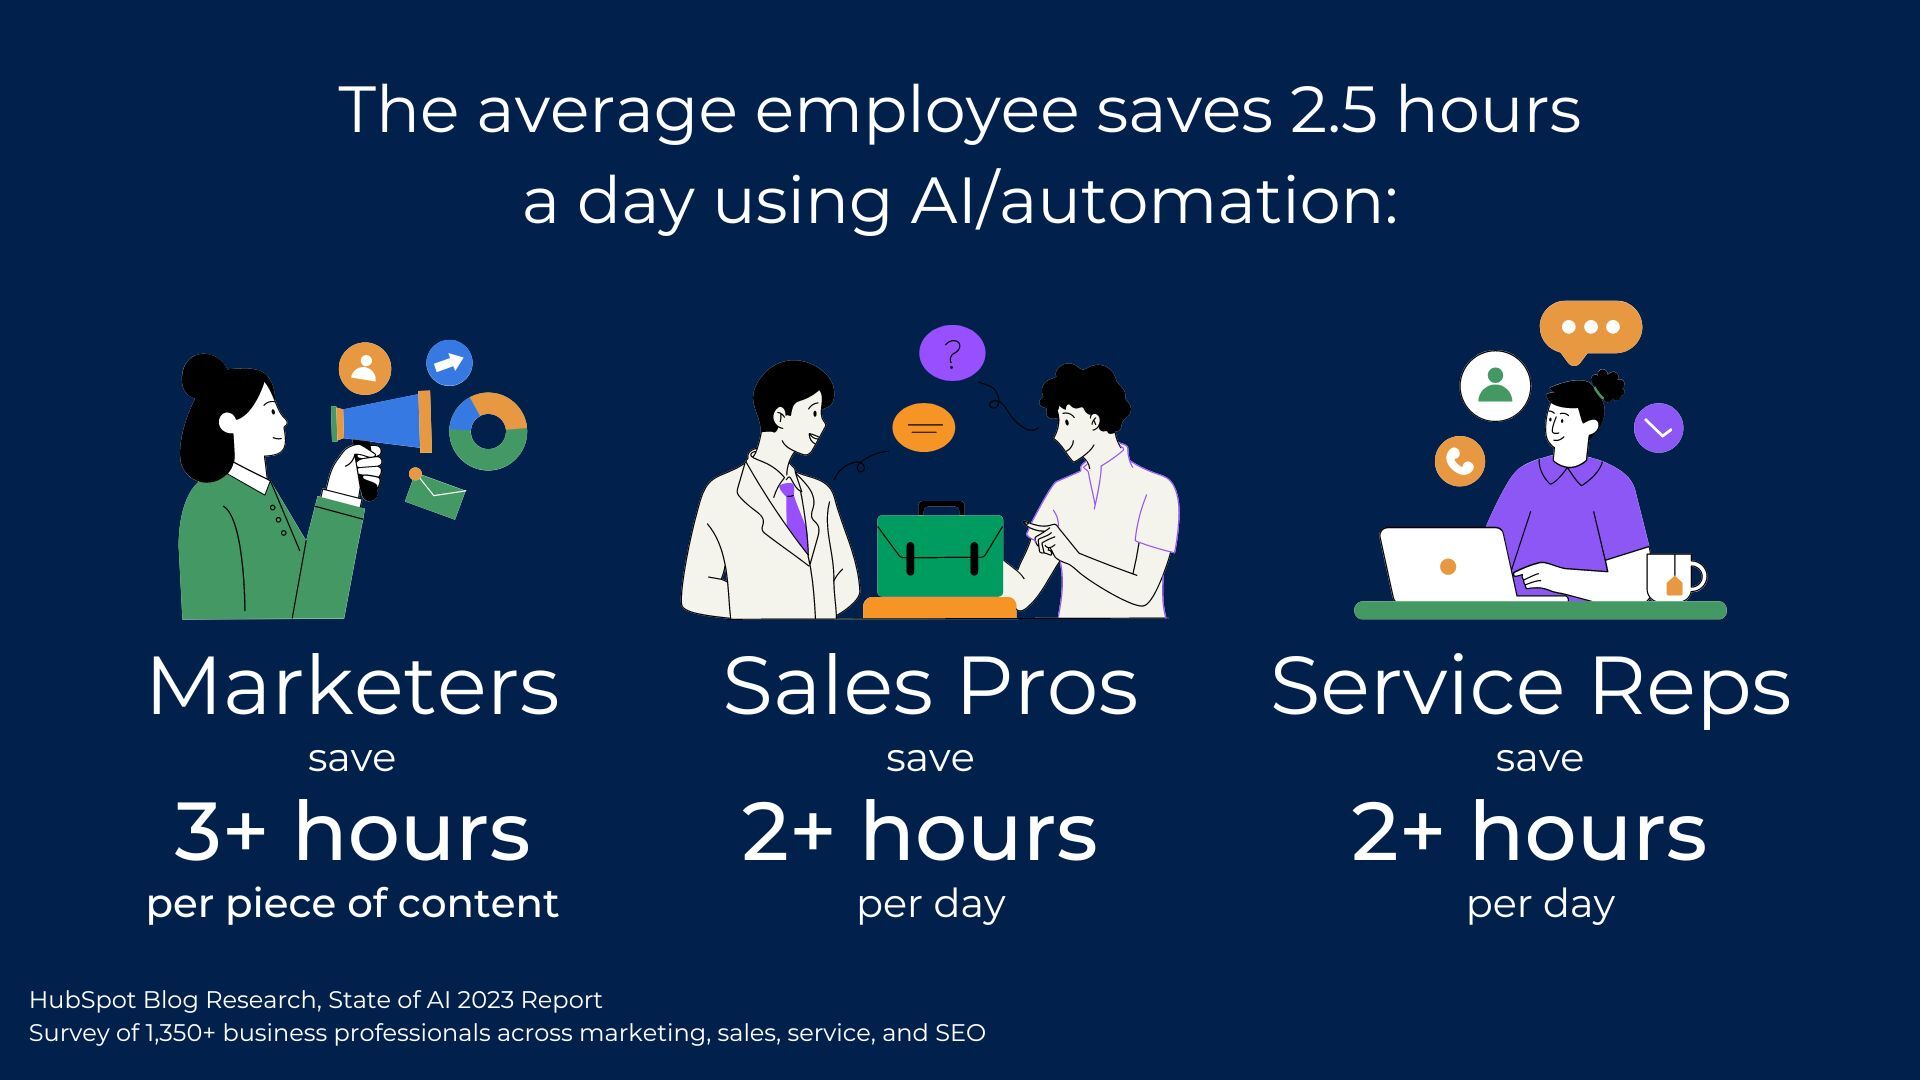 quantas horas por dia os profissionais economizam com a IA